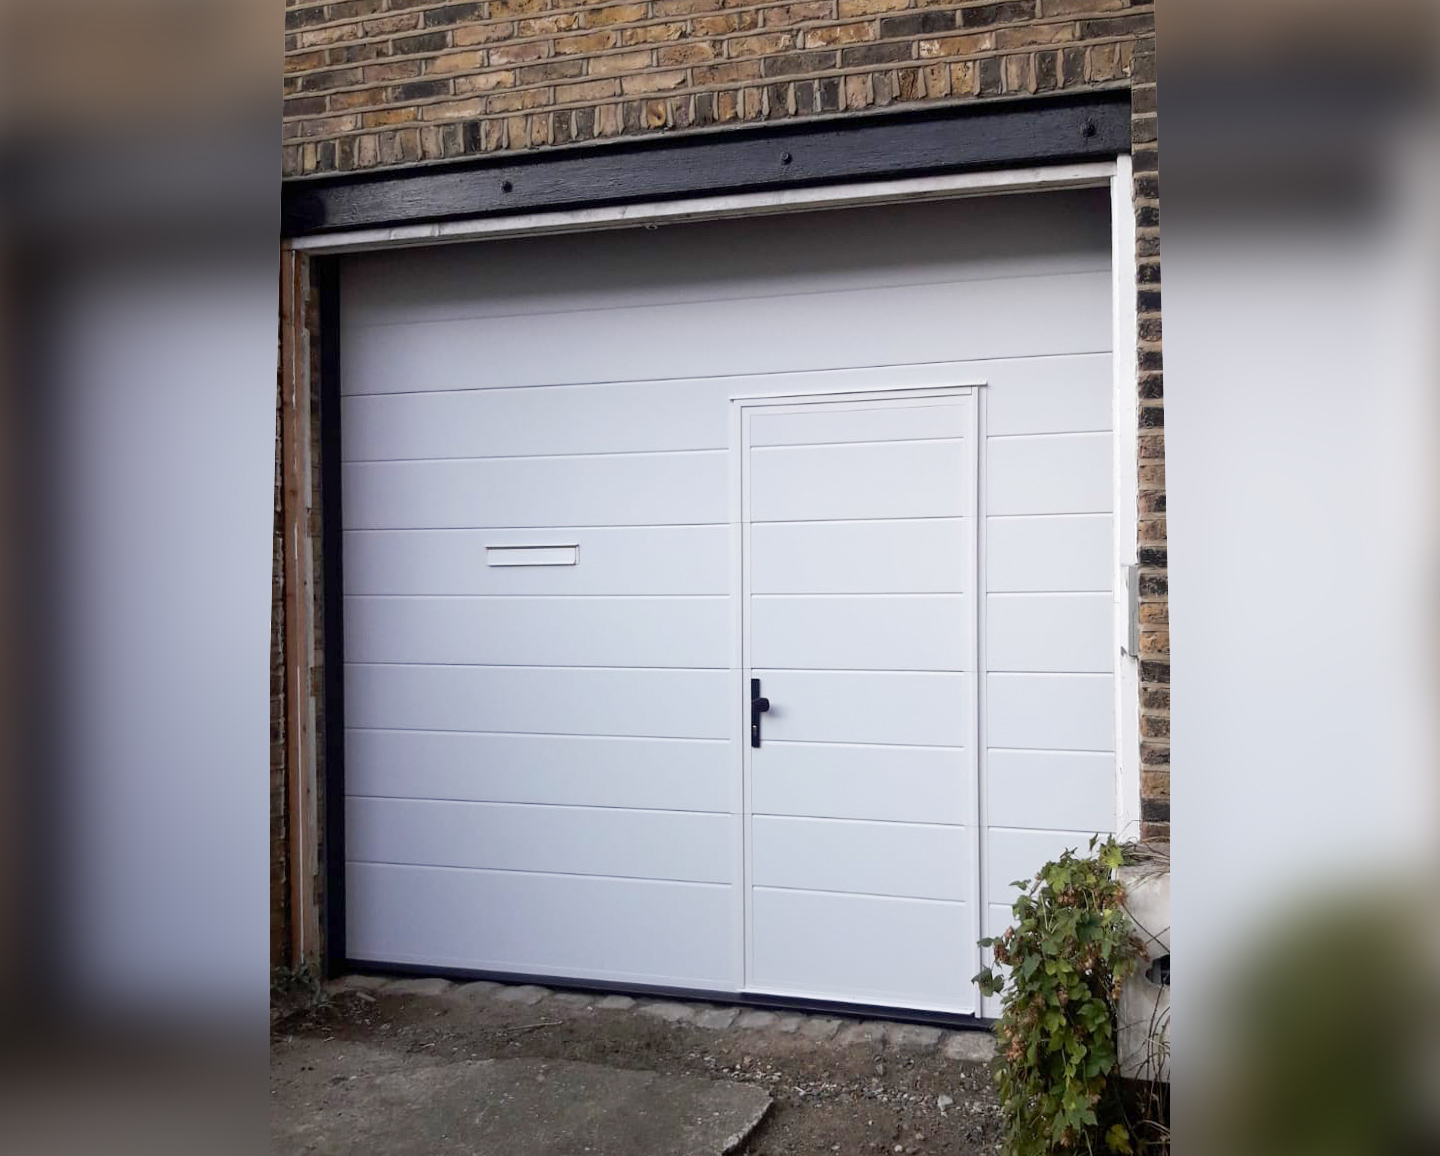 Access Garage Door Posts, Can I Automate My Garage Door